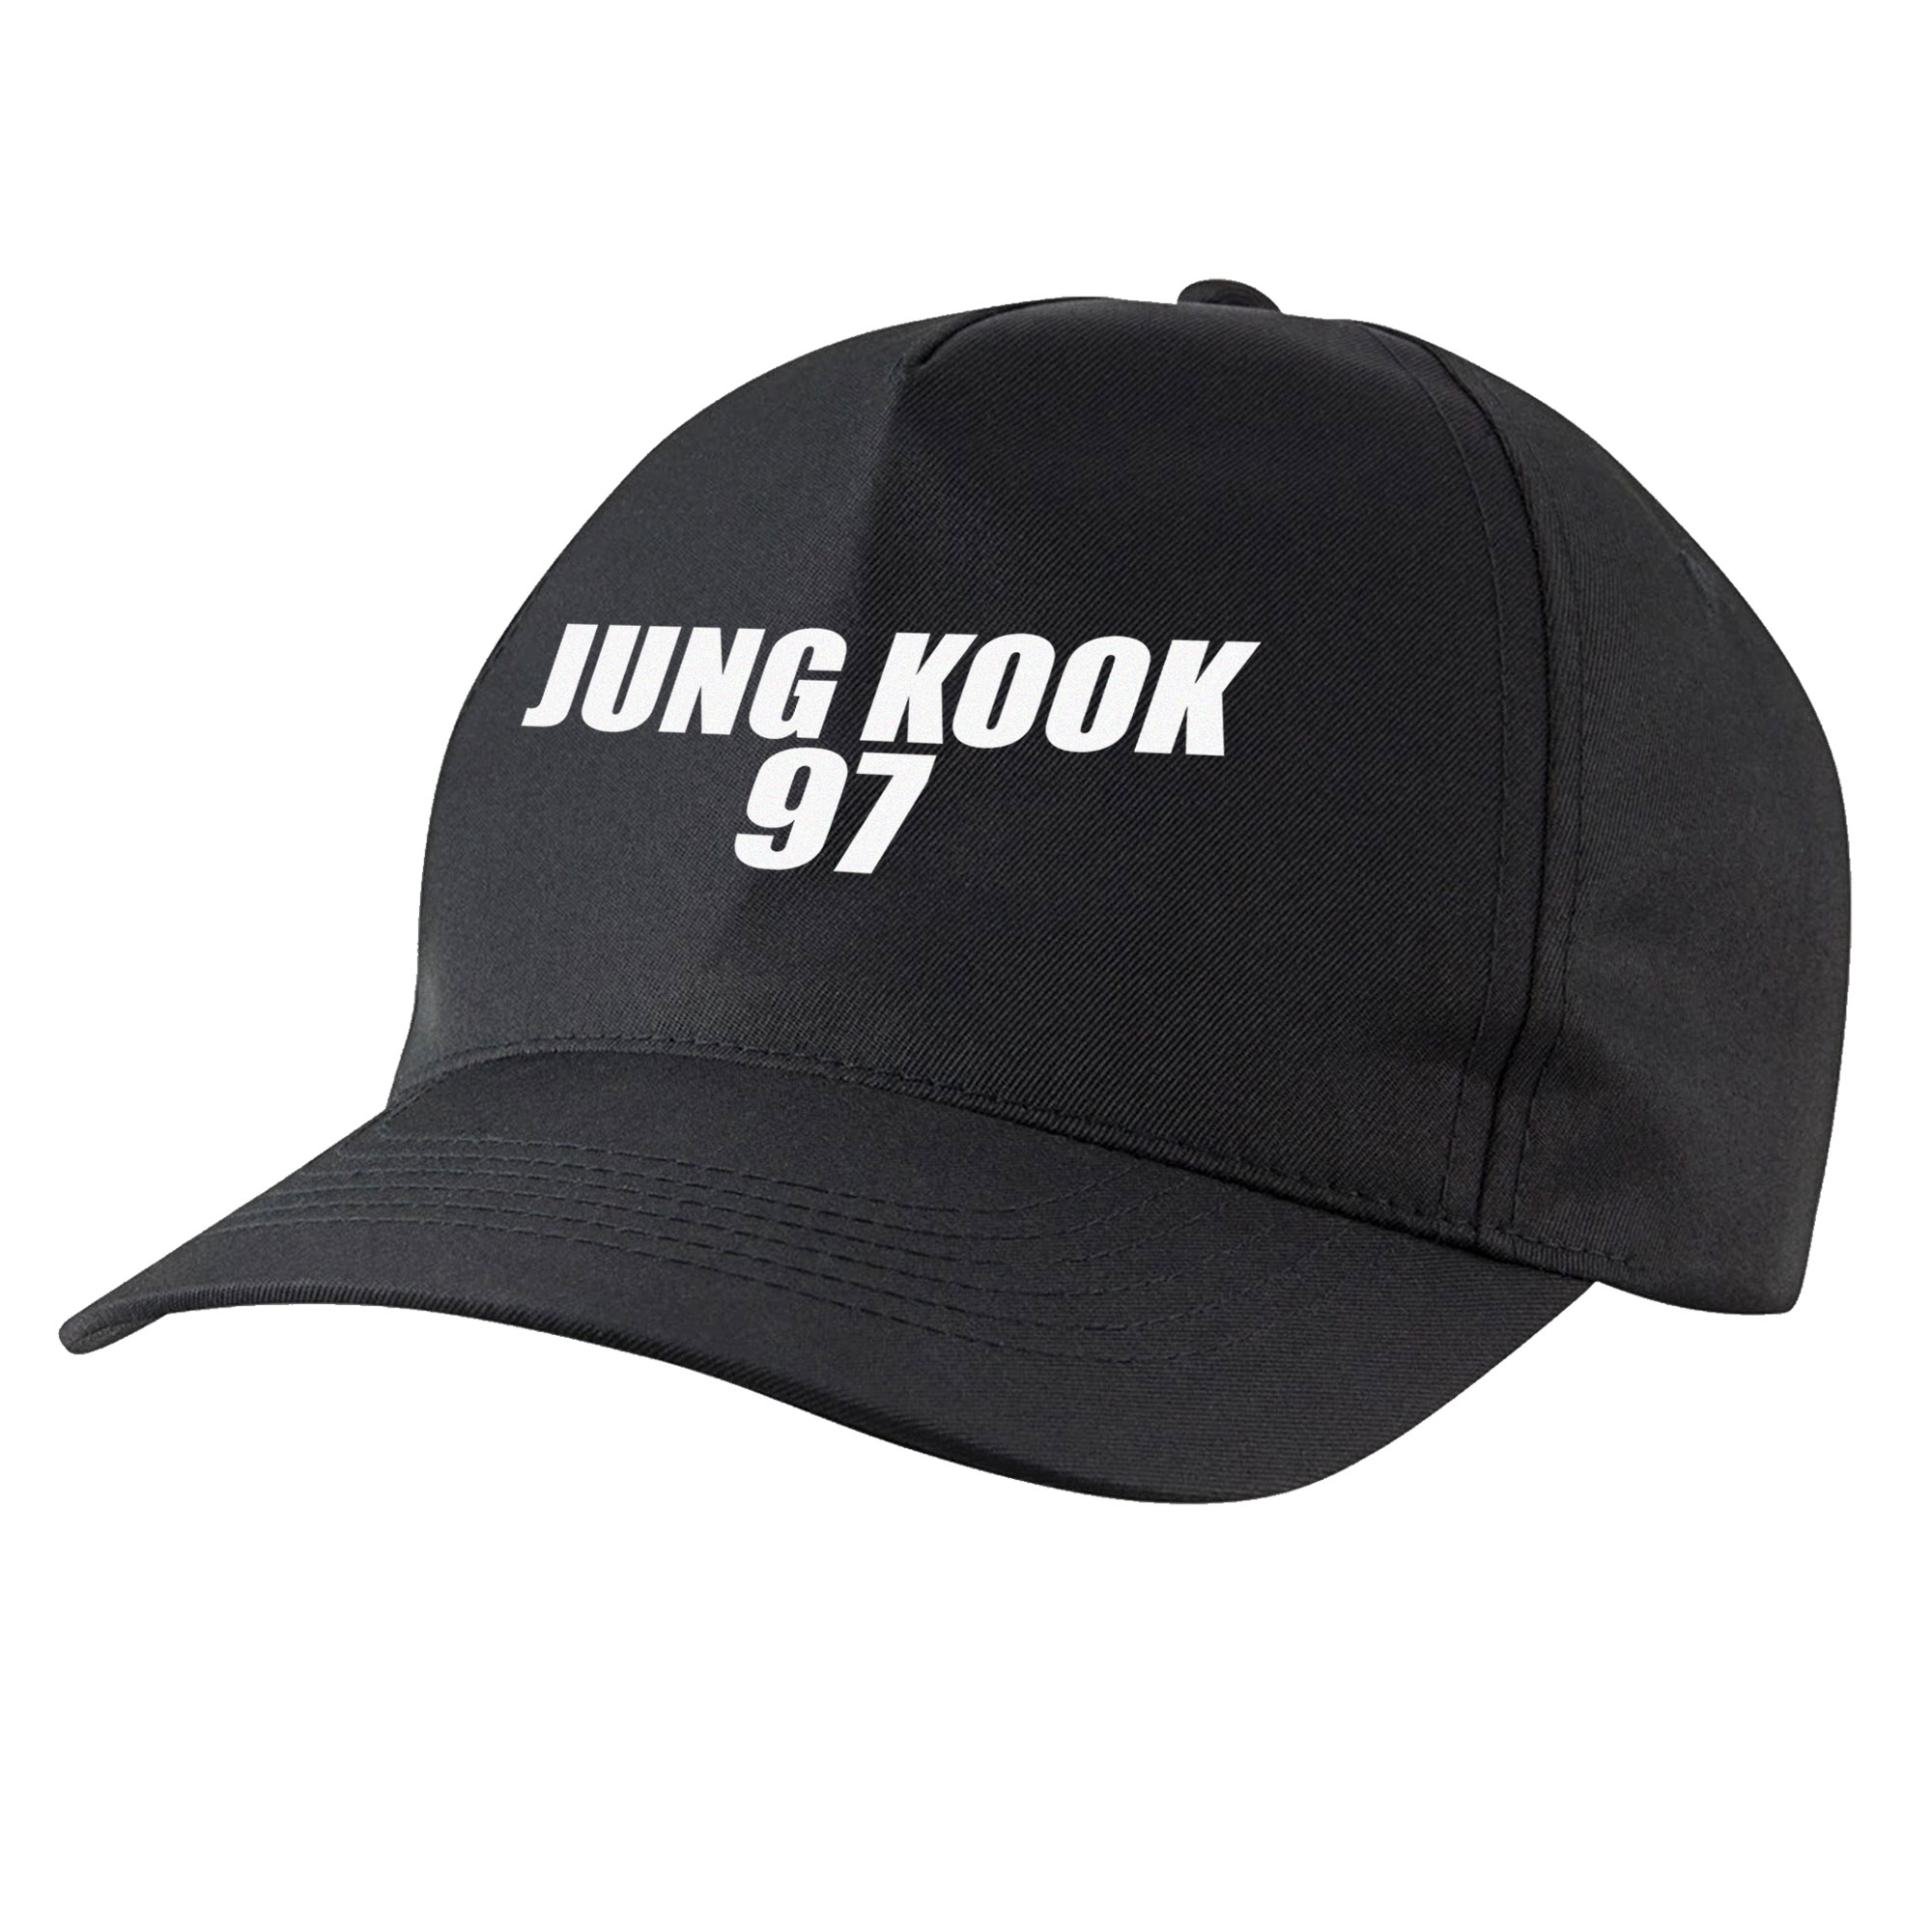 نکته خرید - قیمت روز کلاه کپ مدل گروه موسیقی بی تی اس جونگ کوک کد bbjung-kook خرید